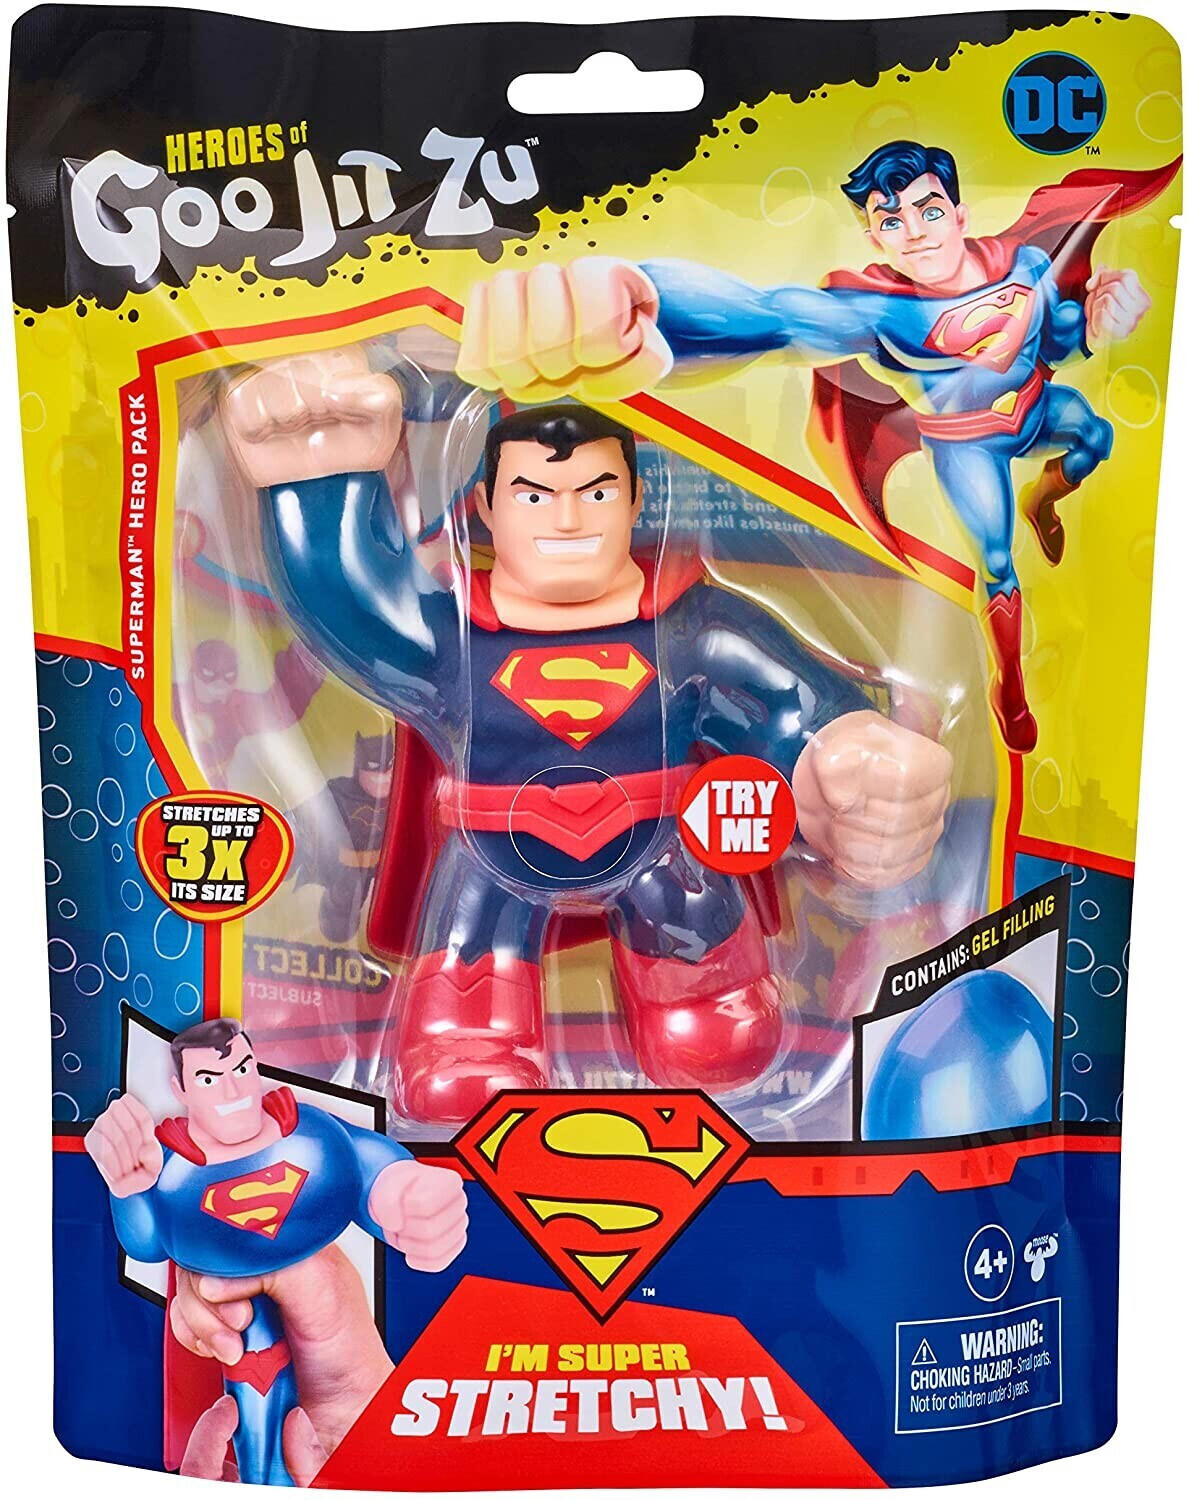 Moose Toys Heroes of Goo Jit Zu Super Heroes - Superman